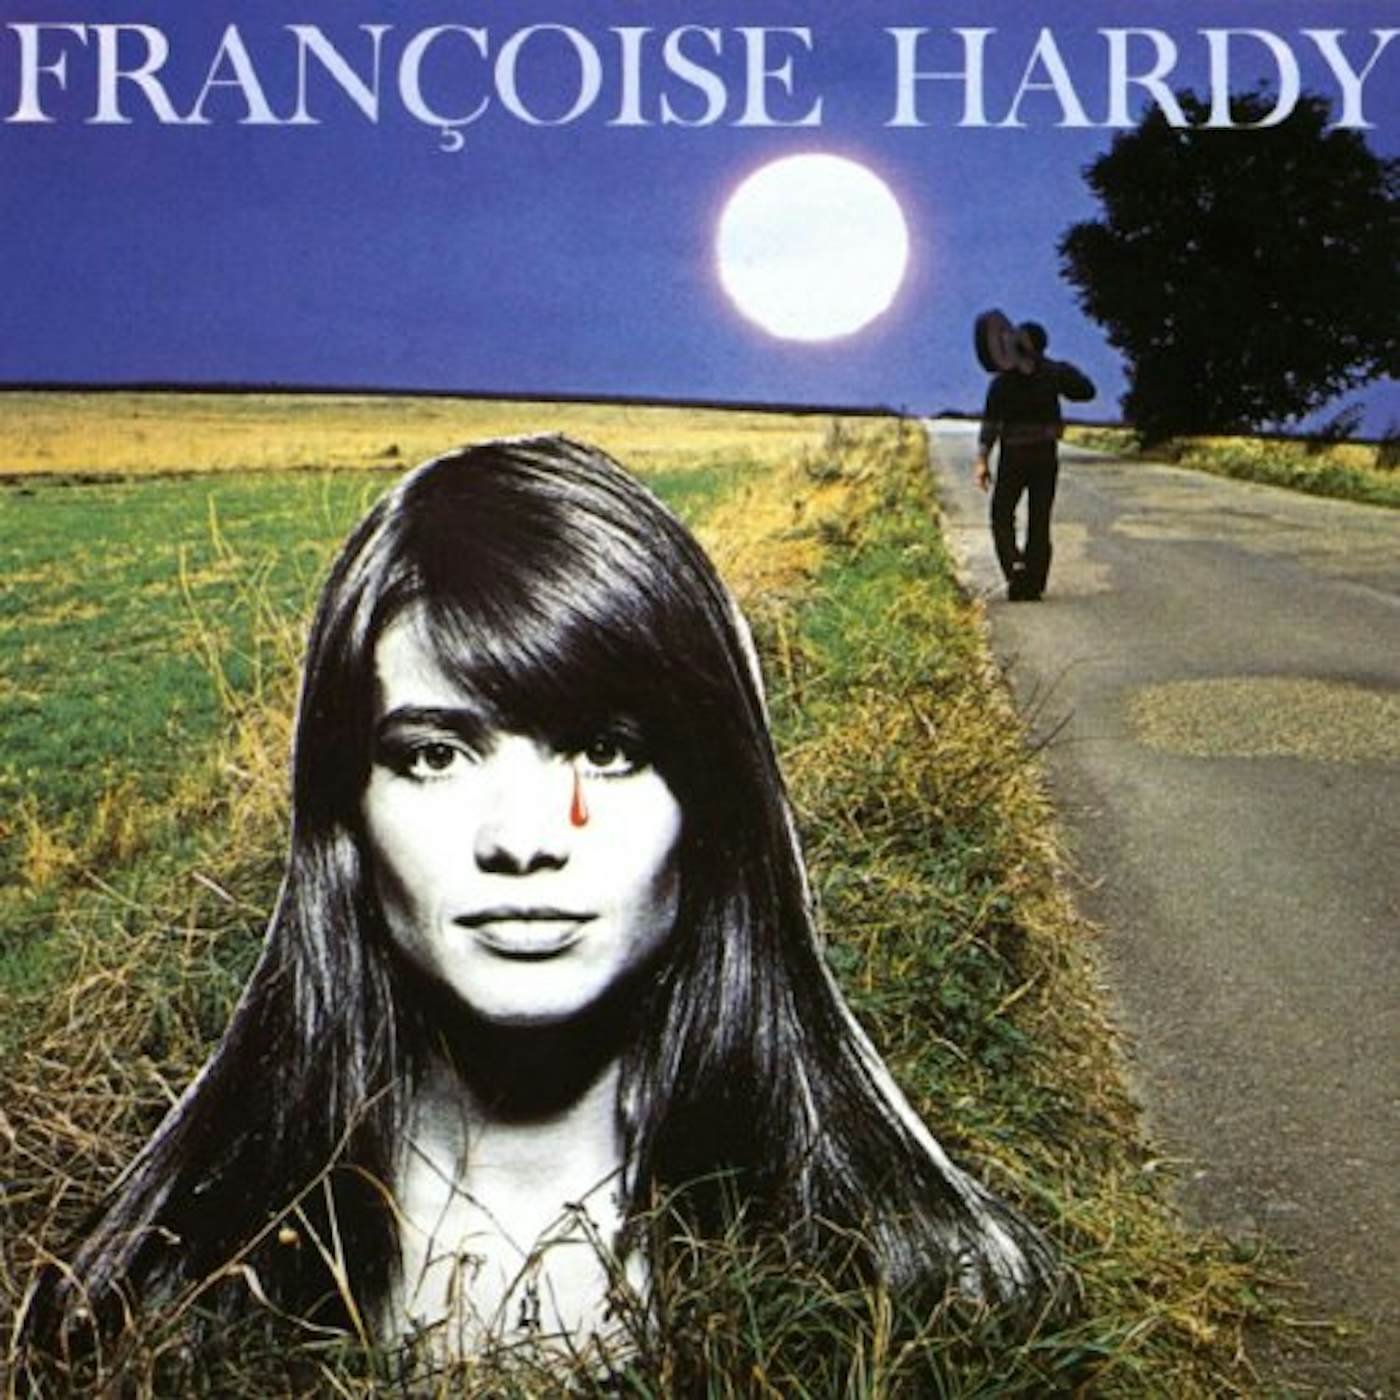 Françoise Hardy Soleil Vinyl Record